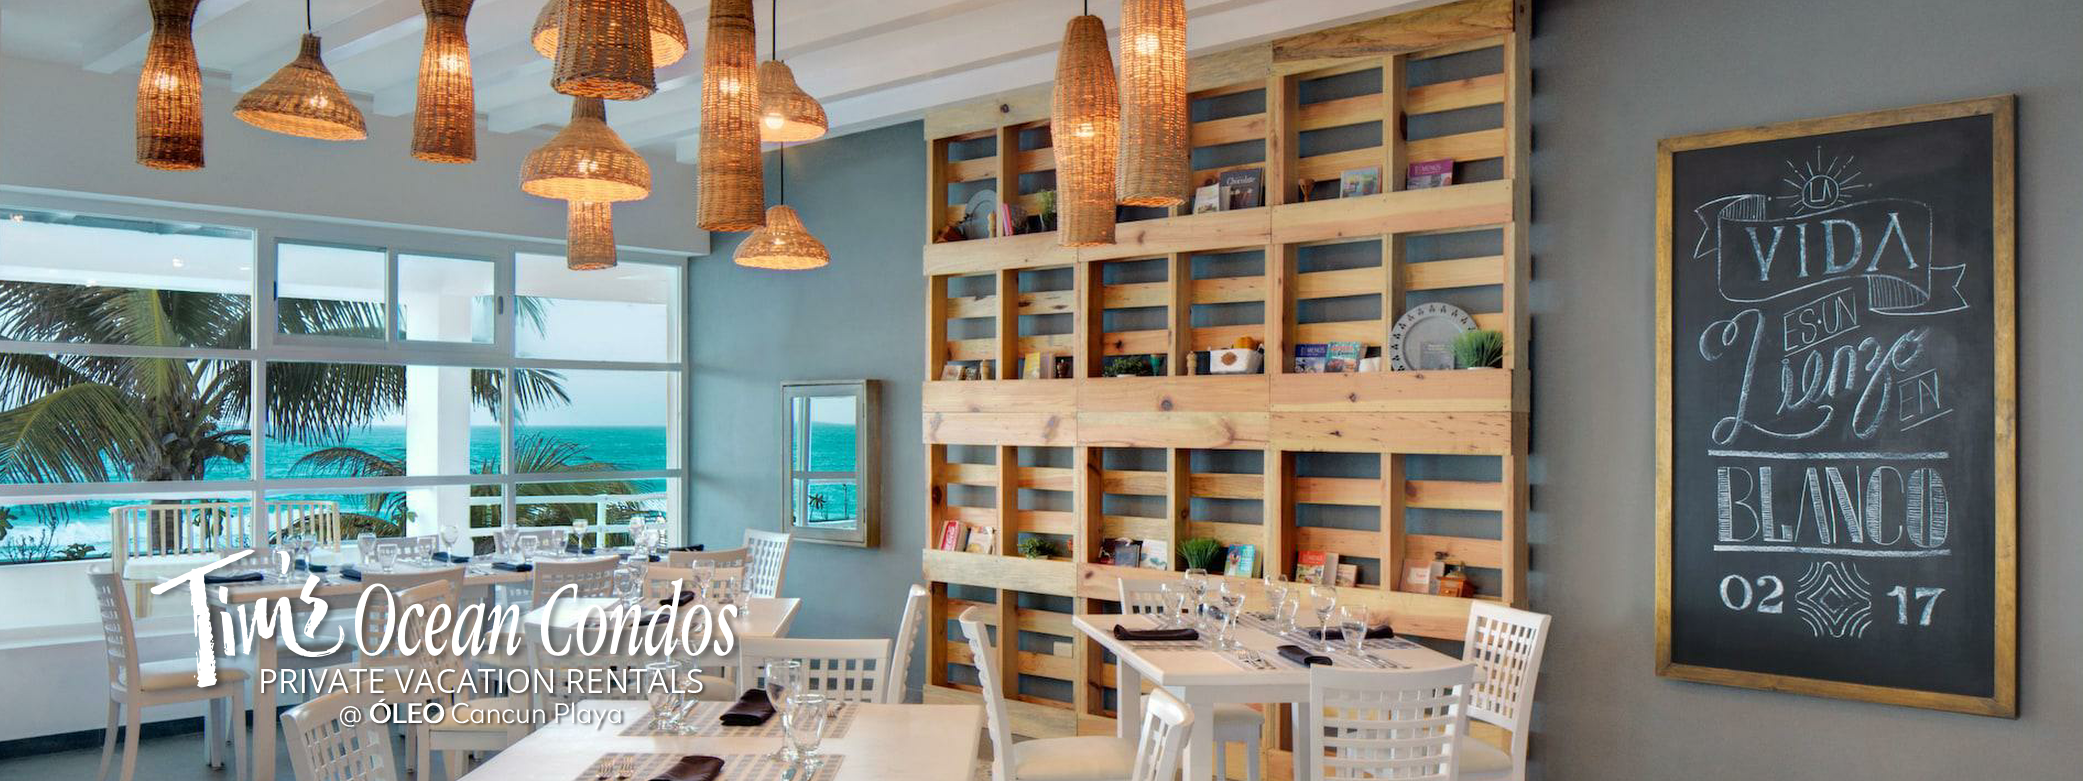 ÓLEO Cancún Playa All Inclusive - Azul Restaurant